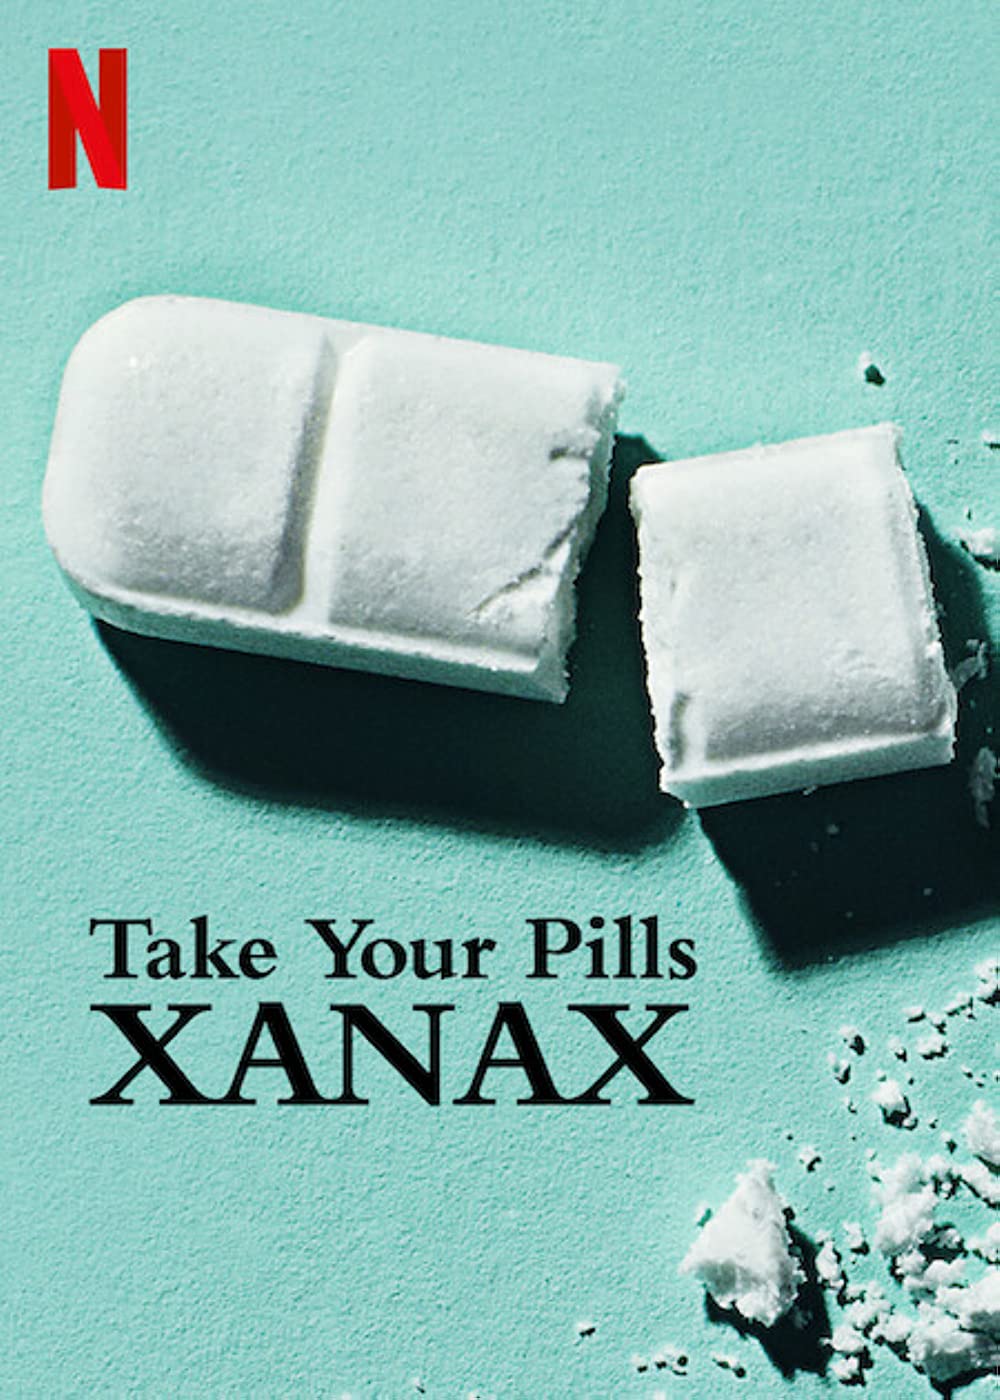 ดูหนังออนไลน์ฟรี Take Your Pills Xanax (2022) เทค ยัวร์ พิลส์ ซาแน็กซ์